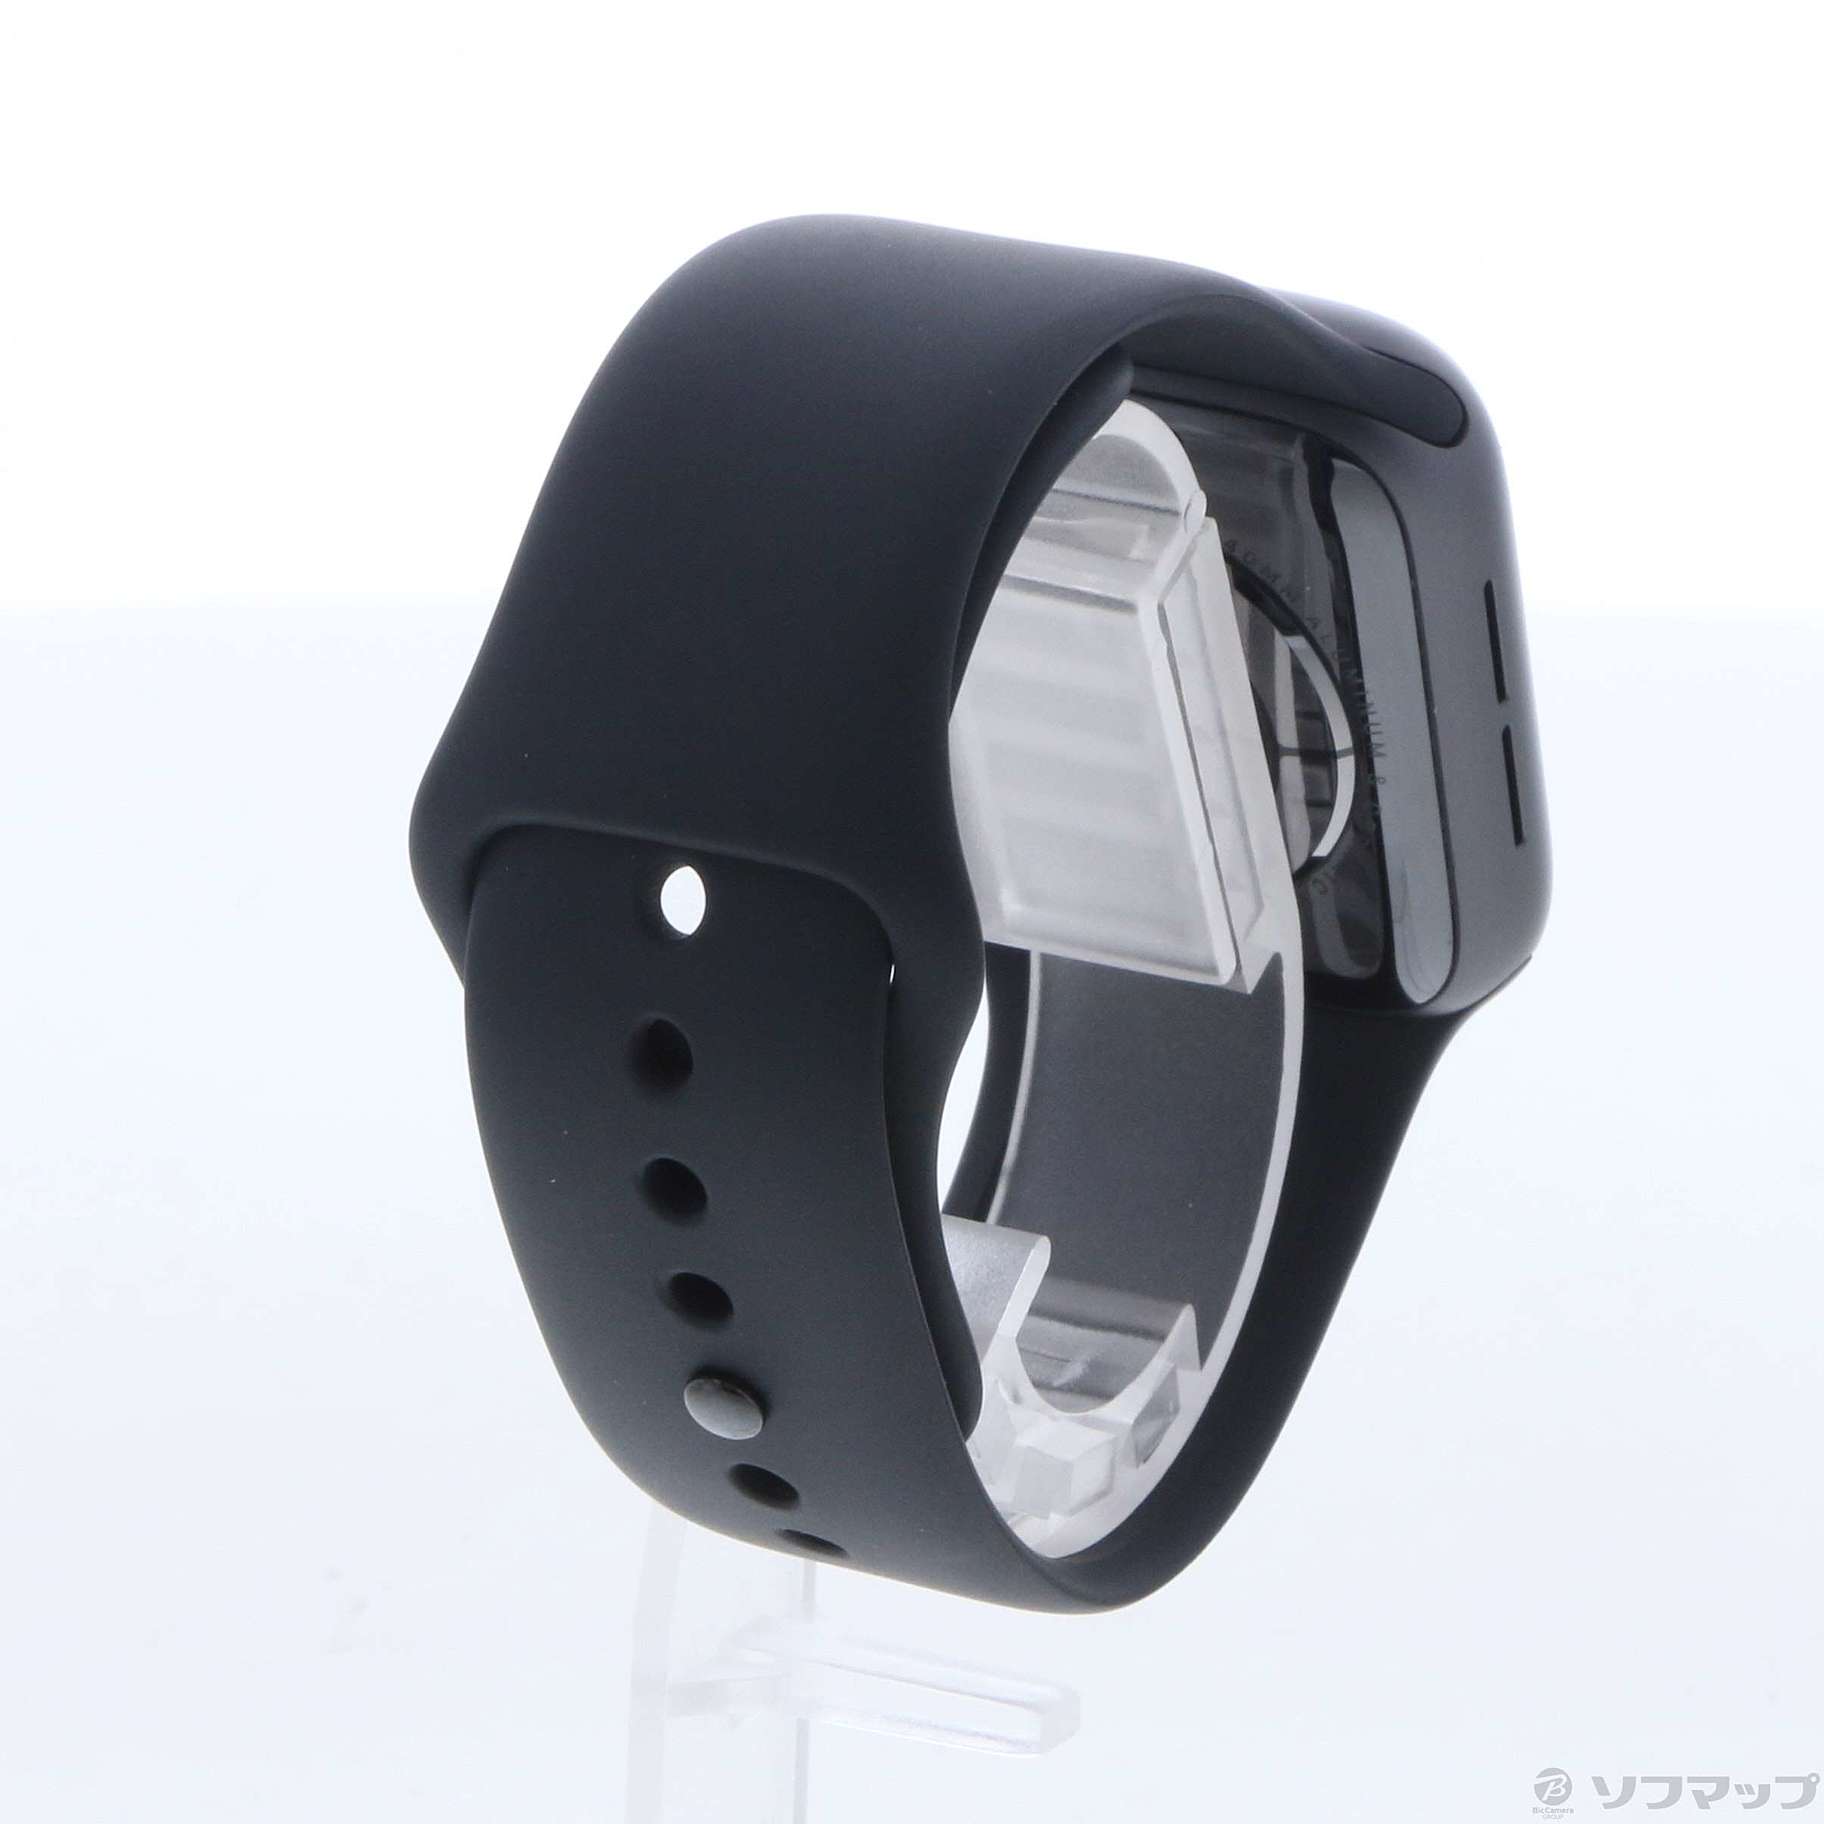 中古】Apple Watch Series 4 GPS 40mm スペースグレイアルミニウム 